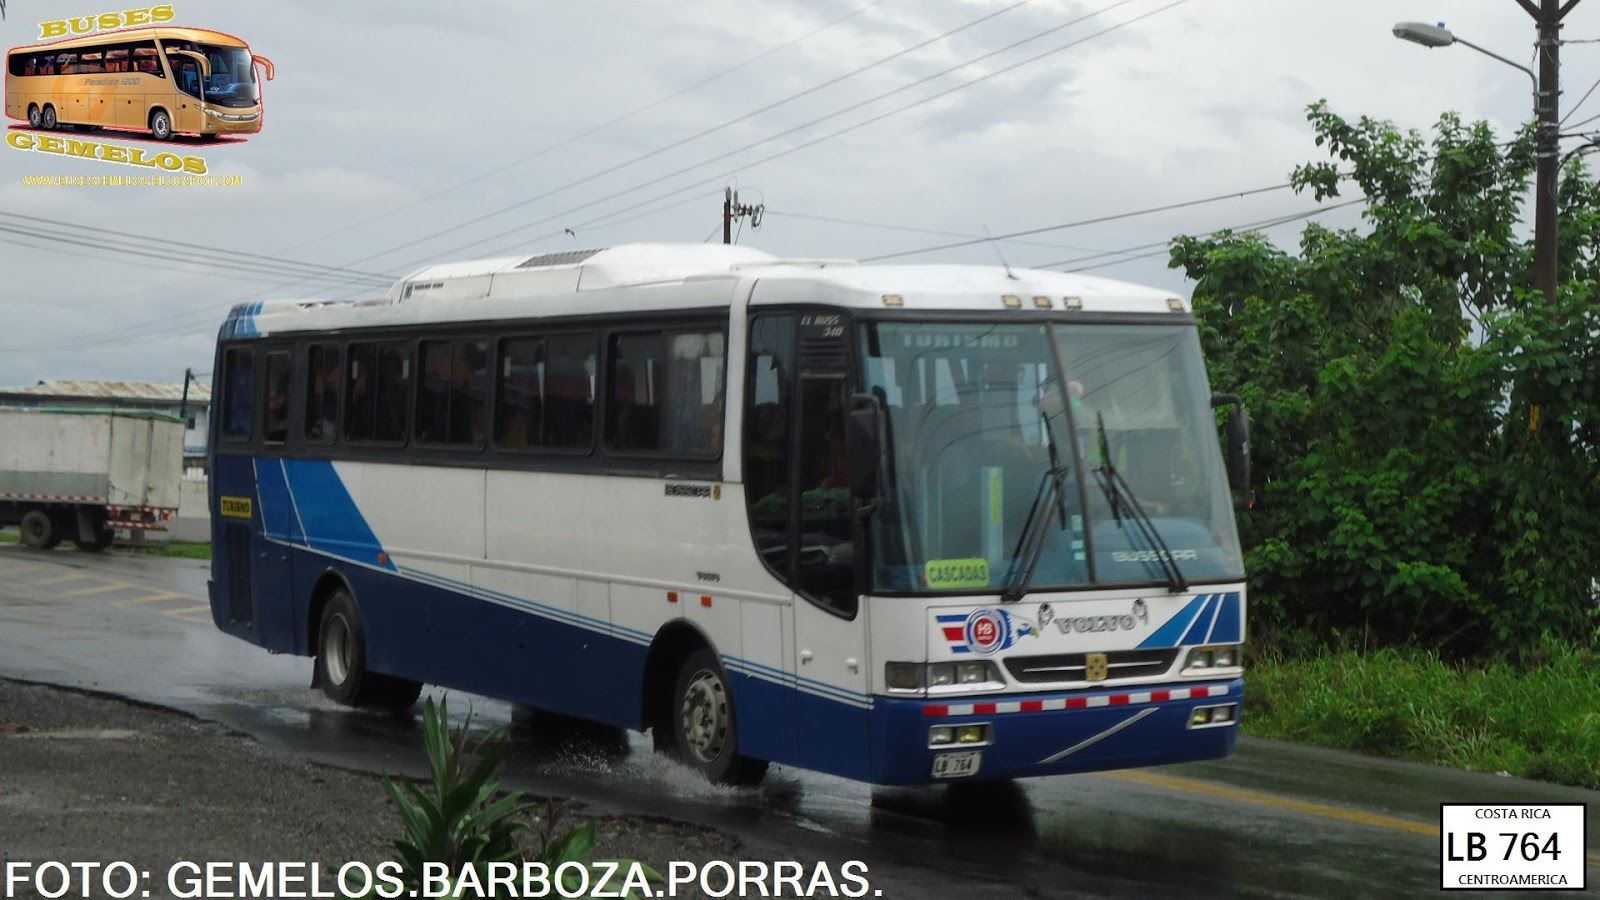 VOLVO B7R BUSSCAR EL BUSS 340 LB 764 UTLIZADO POR TRANSPORTES HEBA